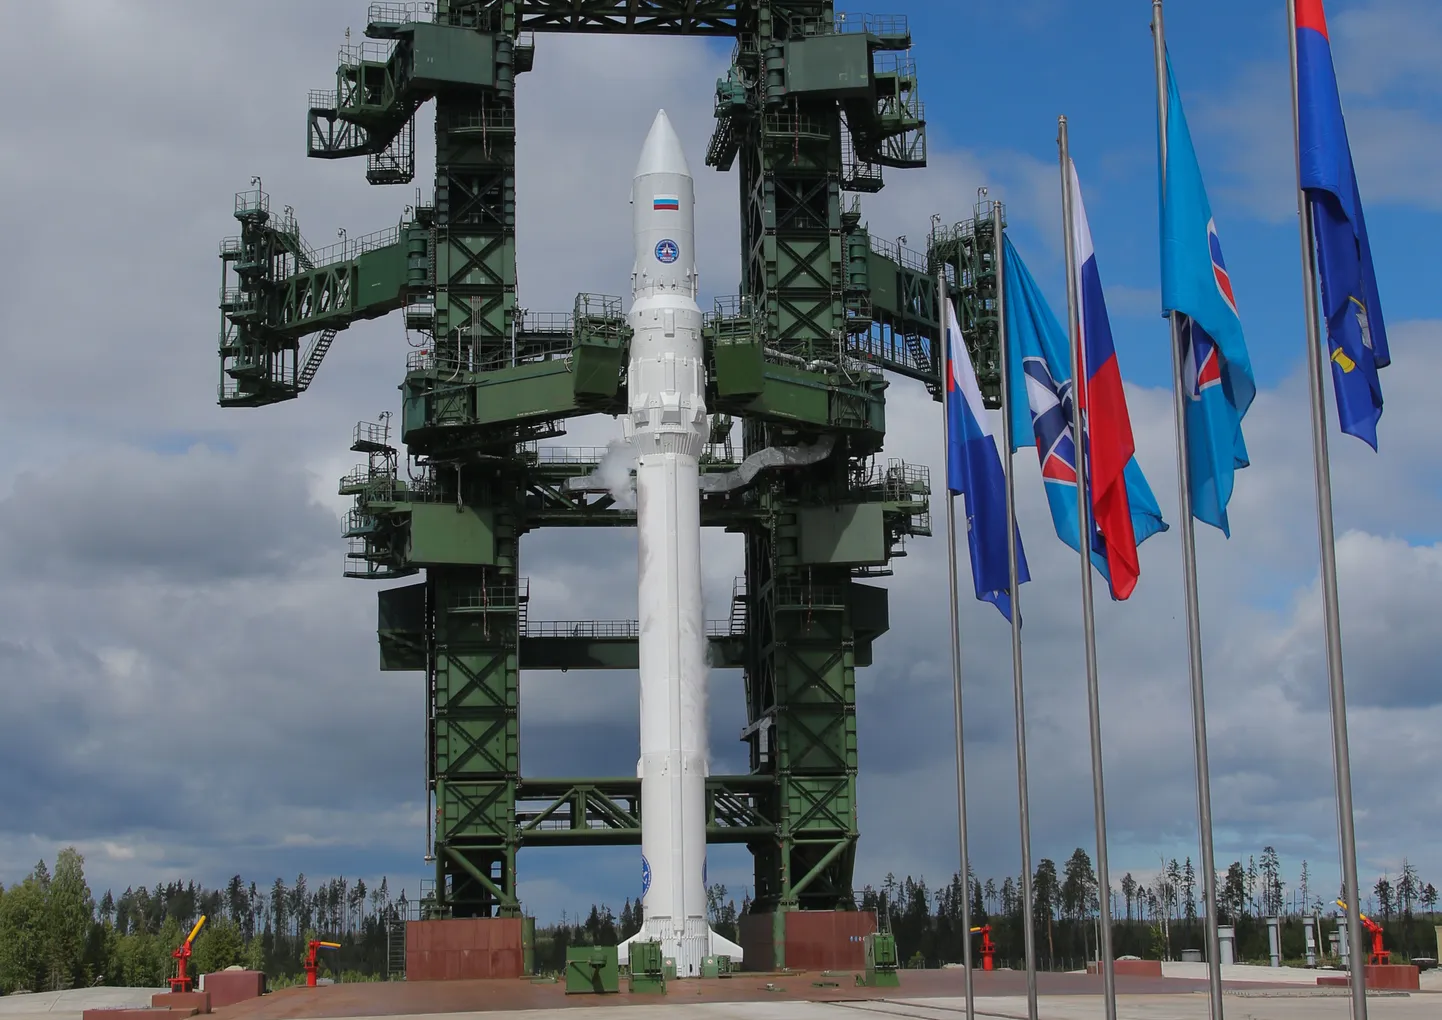 Venemaa katsetas esmakordselt Angara kosmoseraketti 2014. aastal.